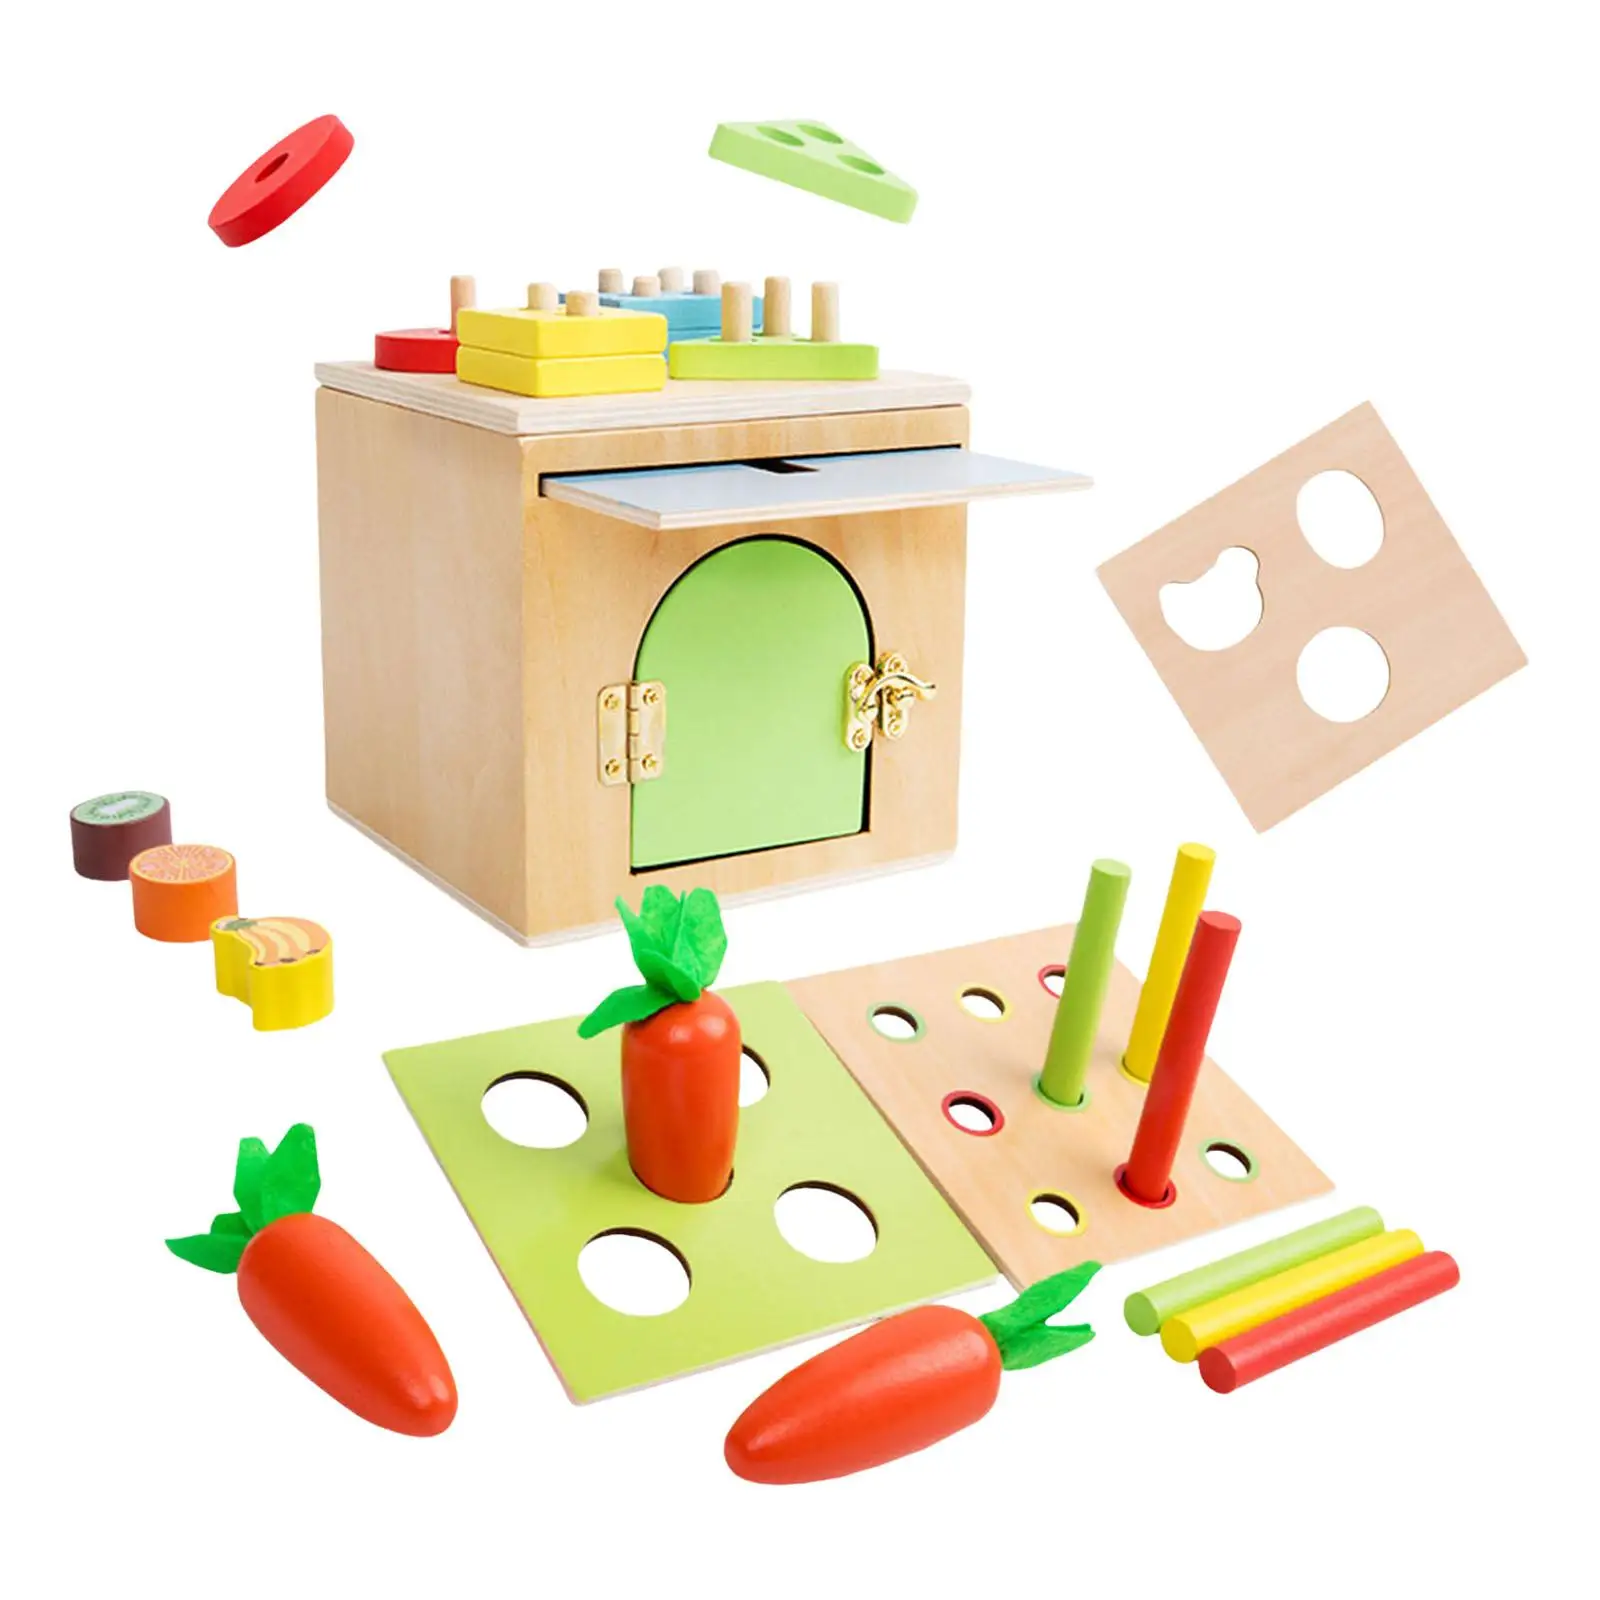 Wooden kit Montessori Toy Sorting Preschool Training Shape Sorter for Children